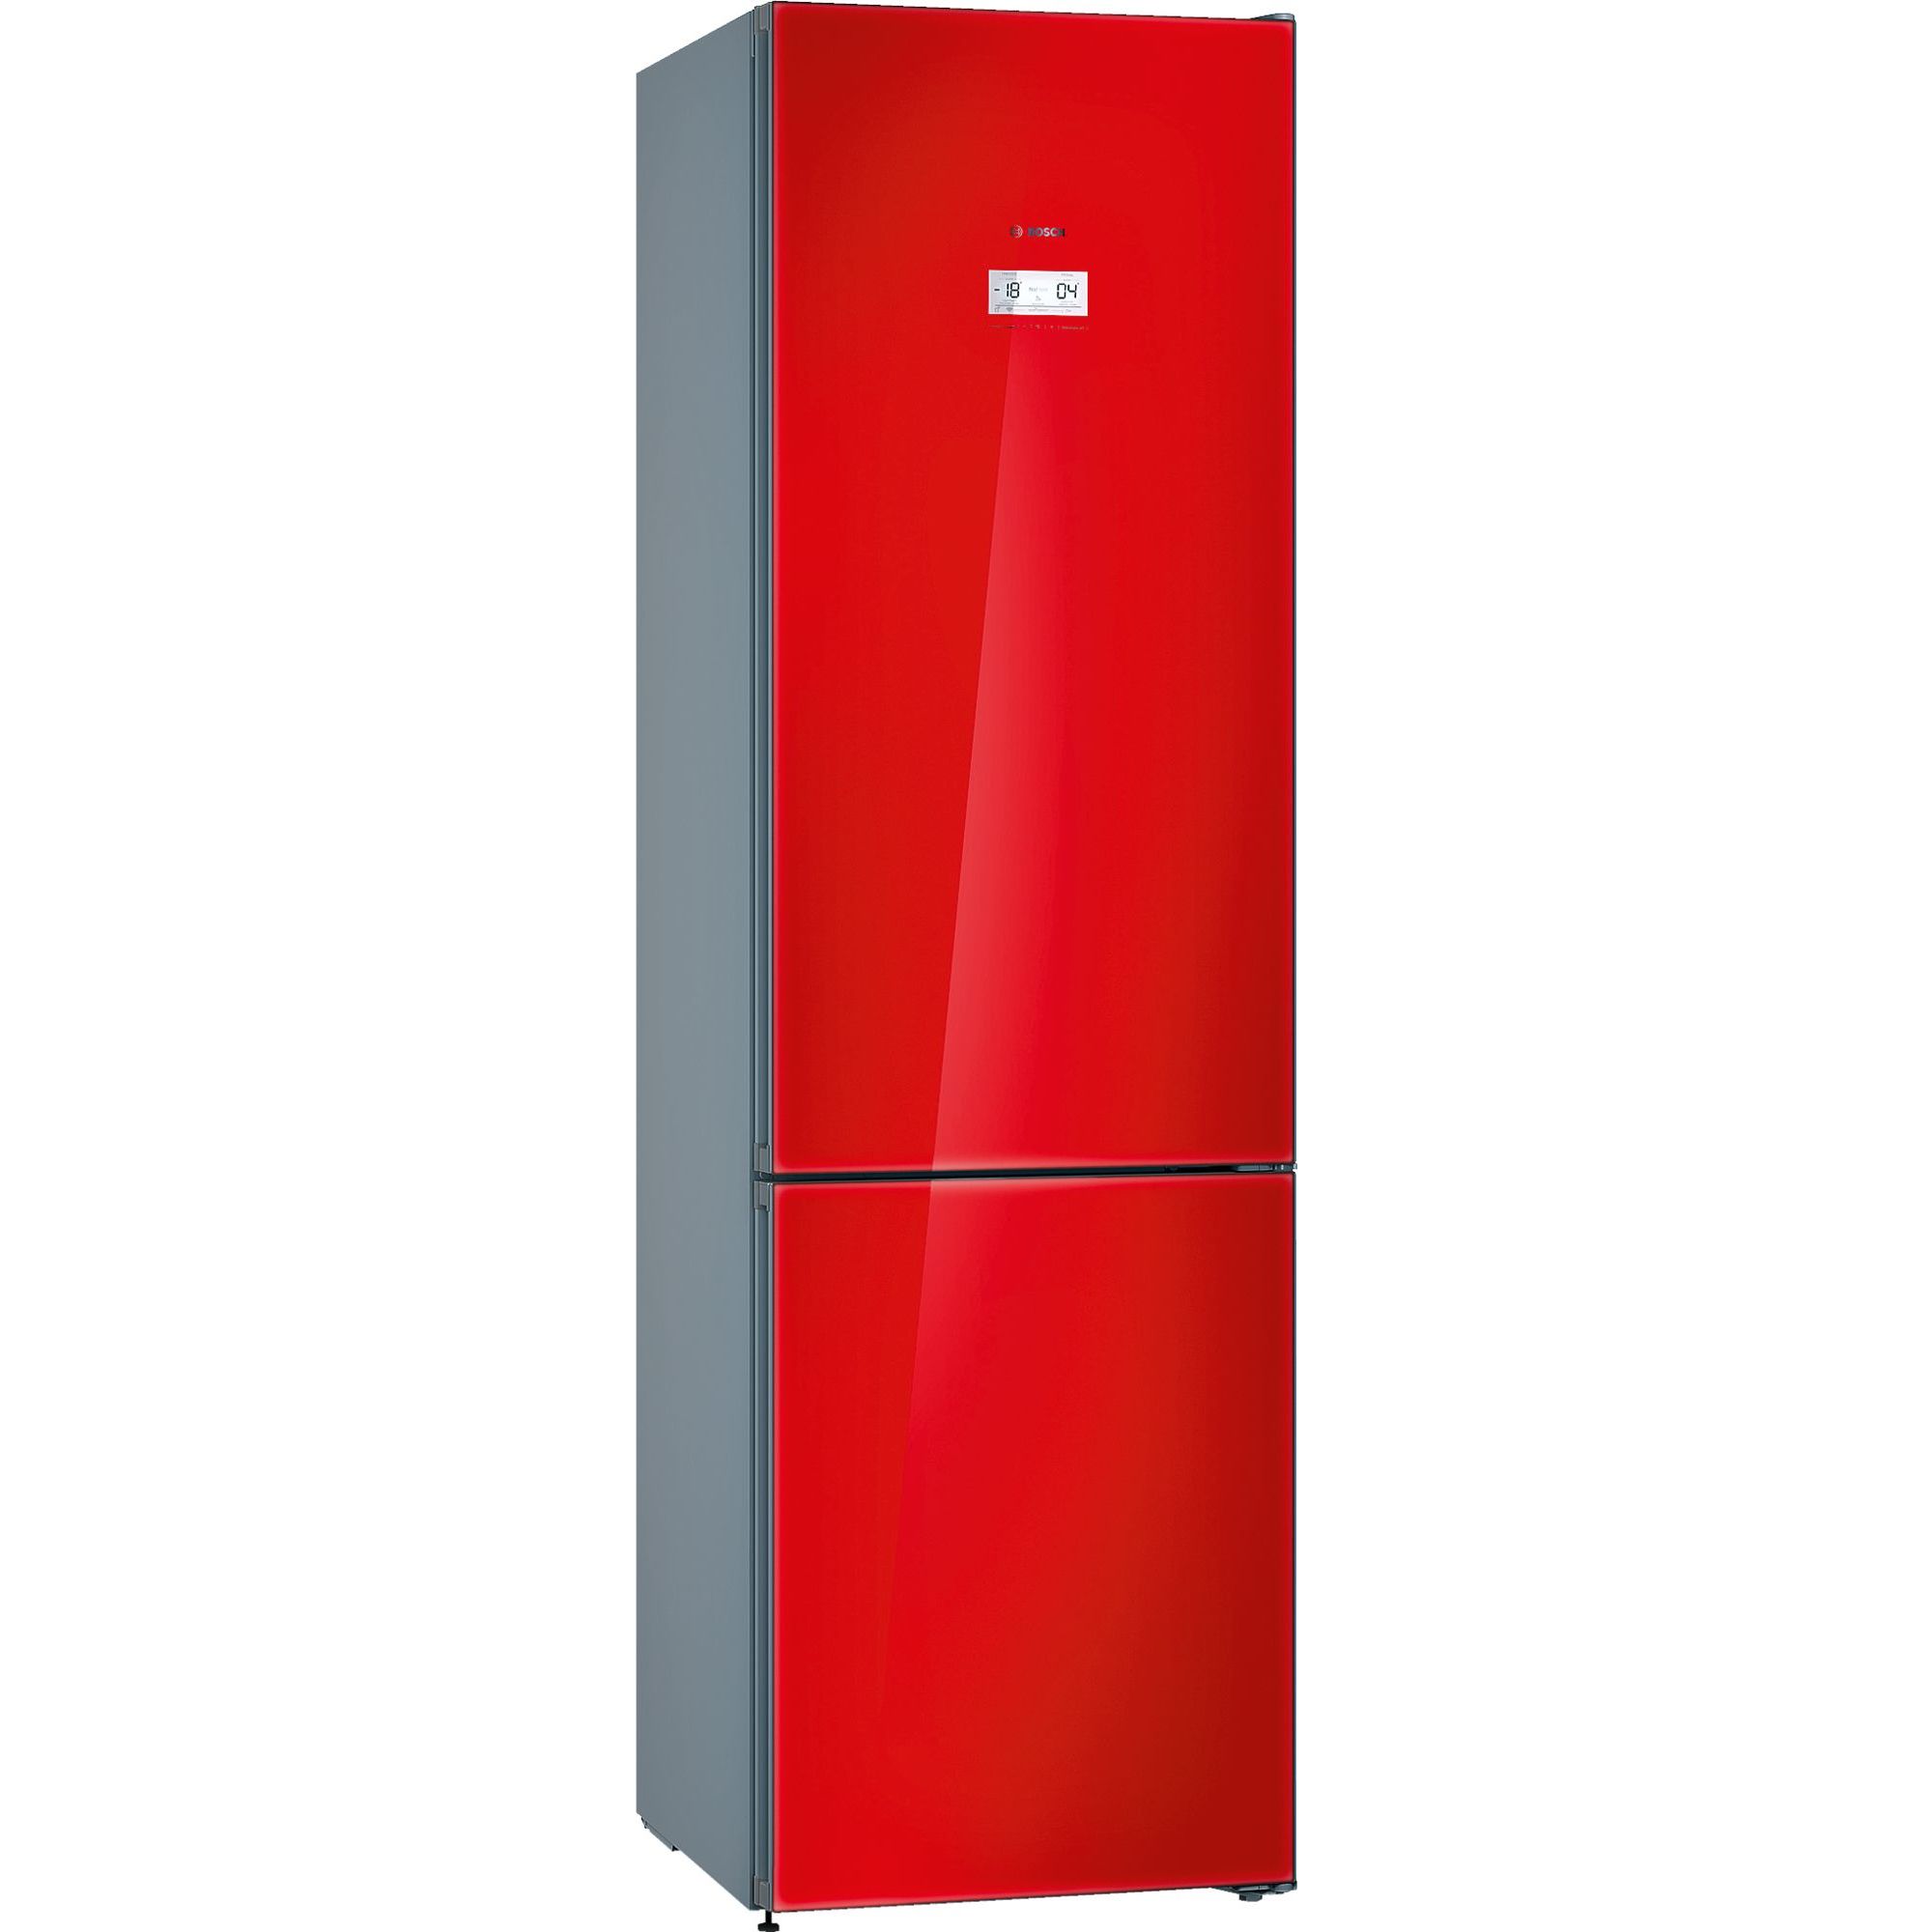 Купить холодильник в воронеже недорого. Холодильник бош kgn36s52. Холодильник бош kgn39sq10r. Bosch kgn39lr3ar. Холодильник Bosch kgn39.